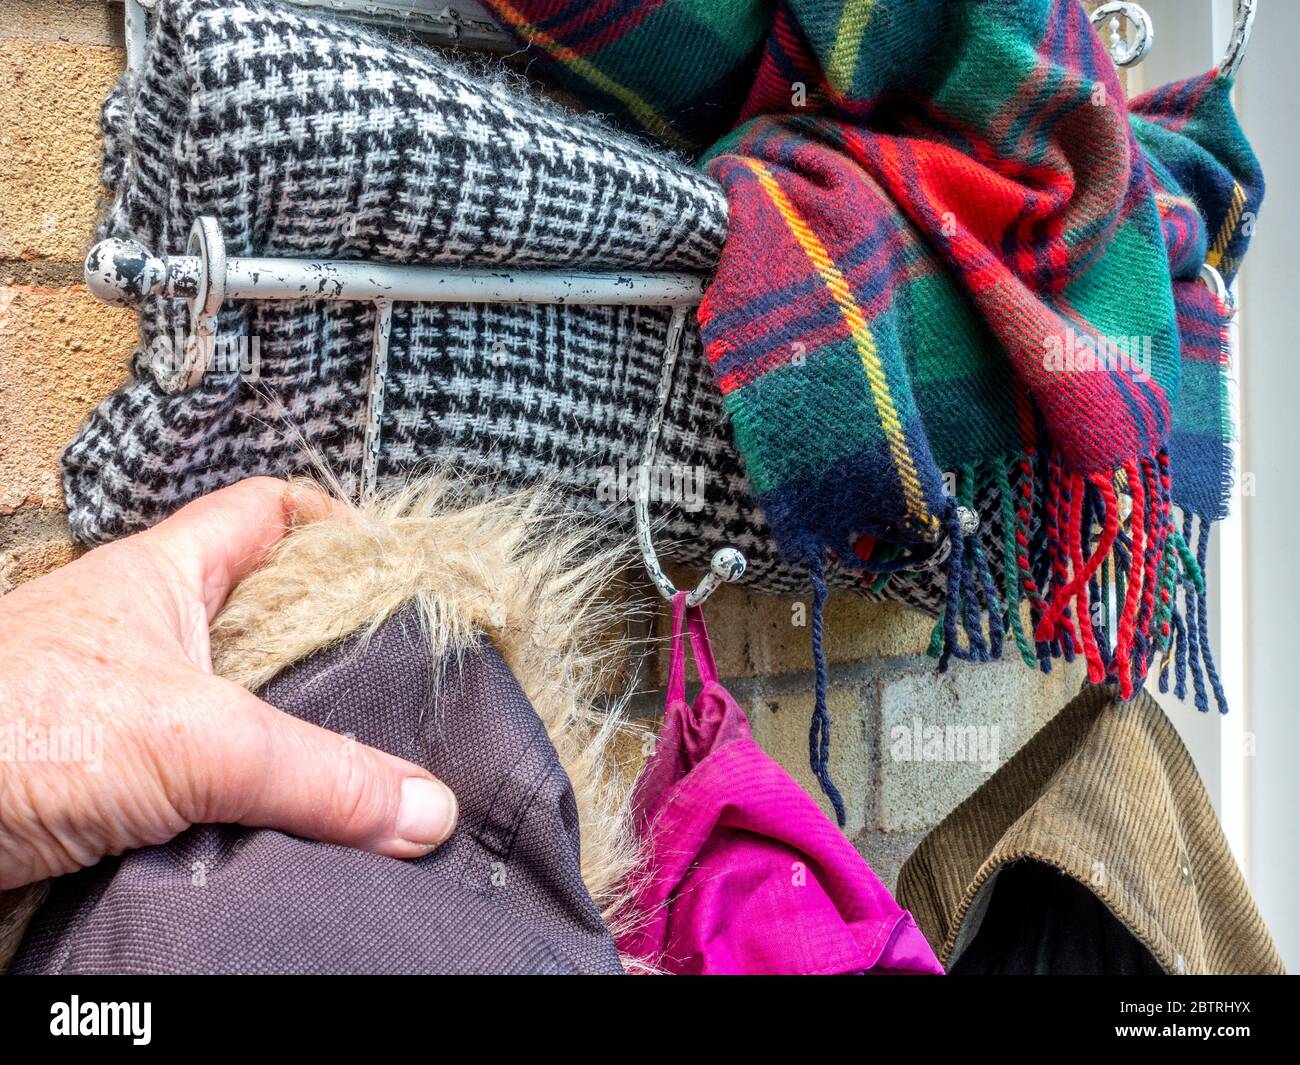 Gros plan POV prise de vue d'un homme portant un manteau d'hiver sur un  crochet, avec des foulards de laine colorés pressés dans le rack ci-dessus  Photo Stock - Alamy